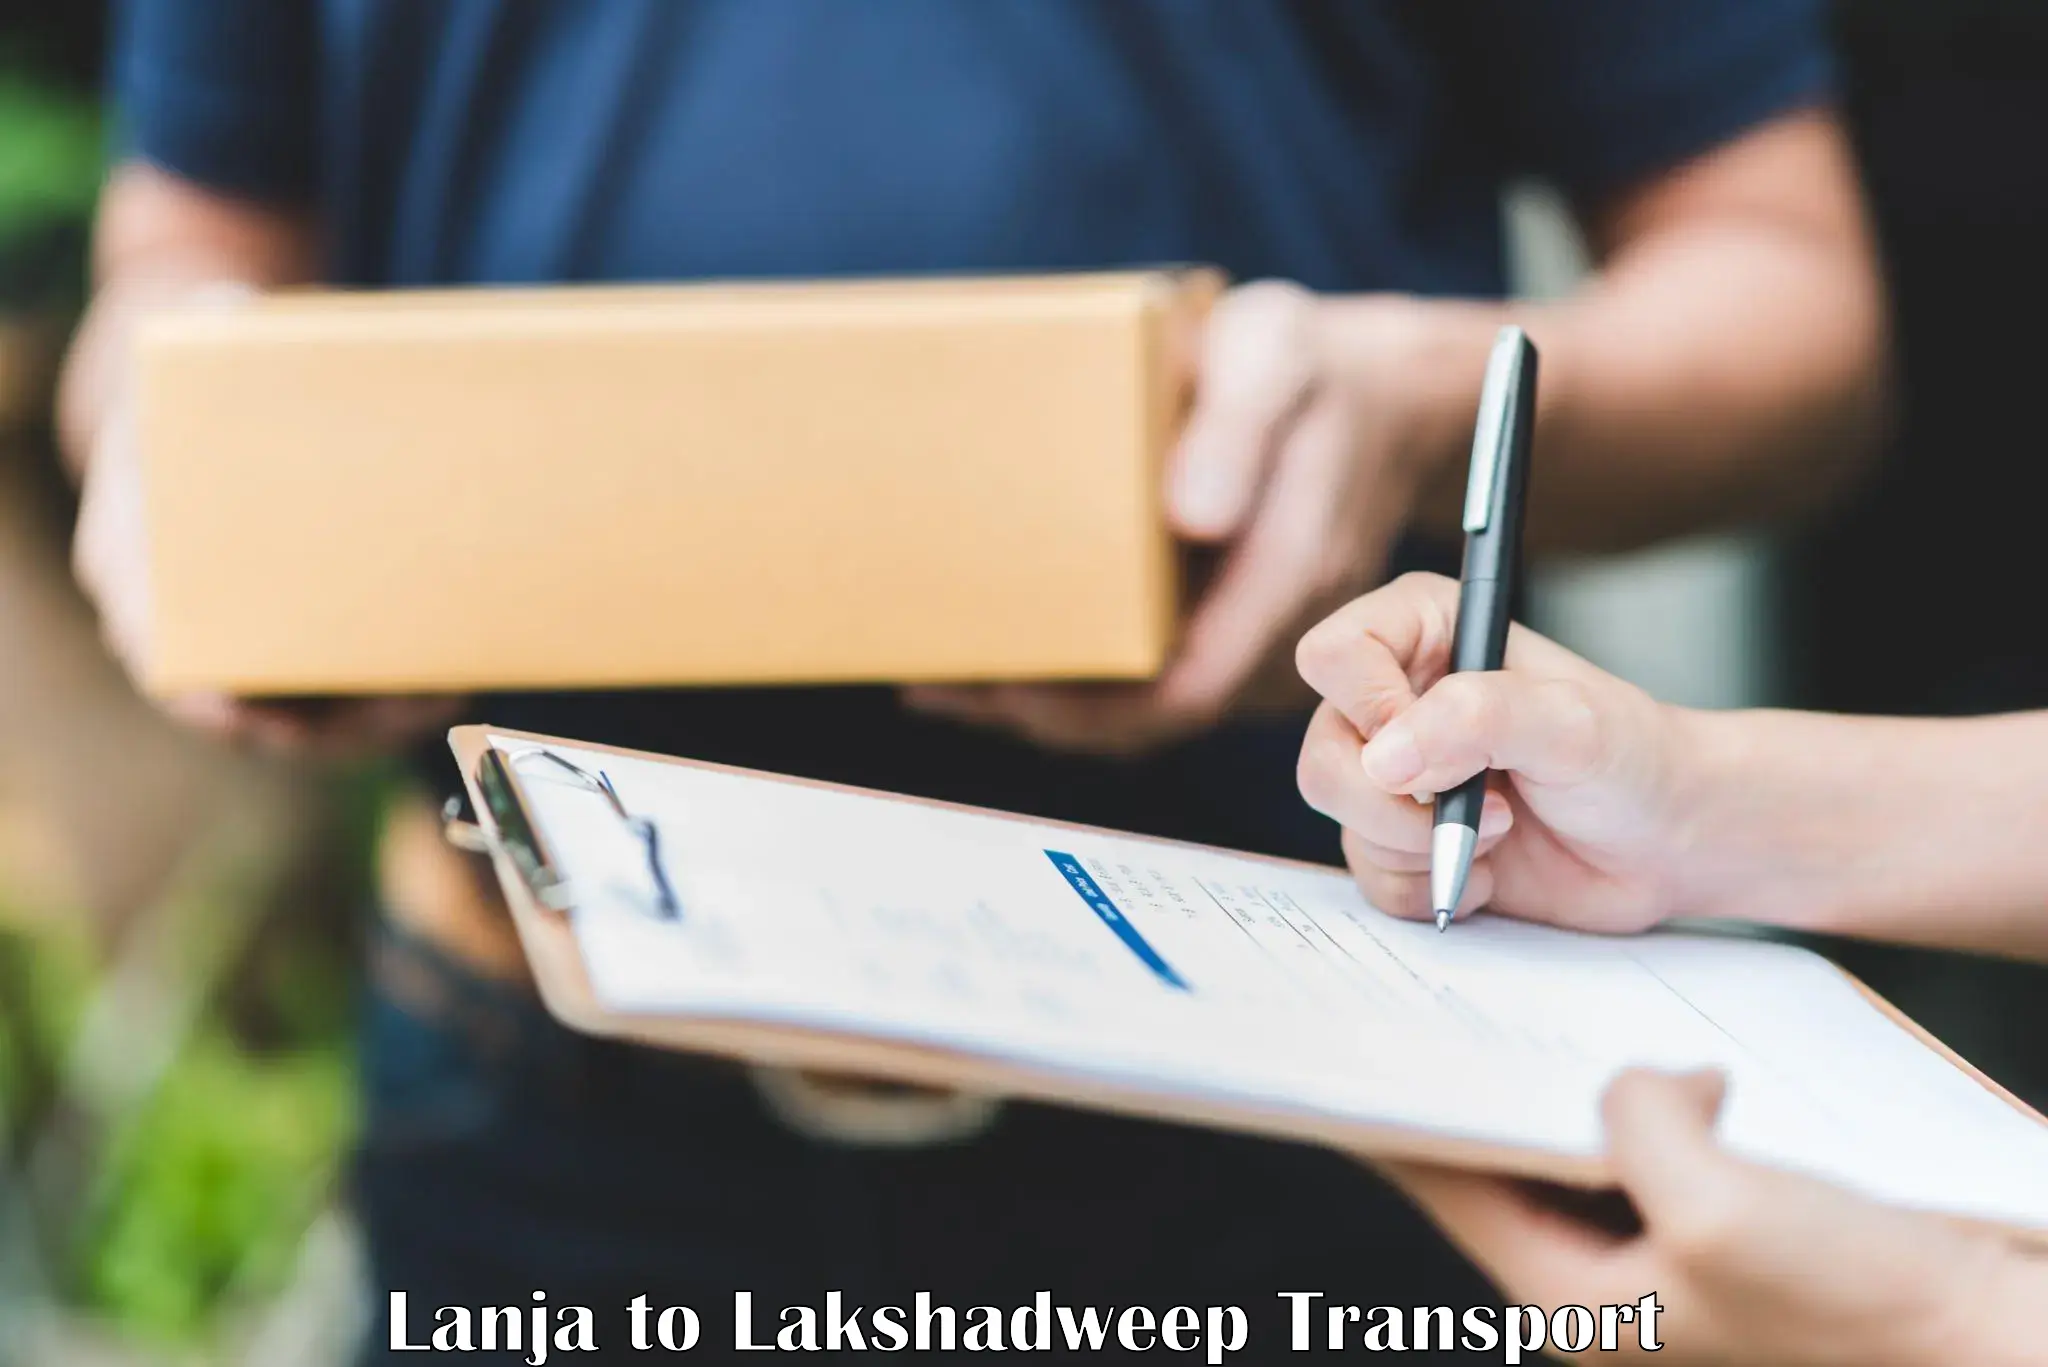 Two wheeler parcel service Lanja to Lakshadweep